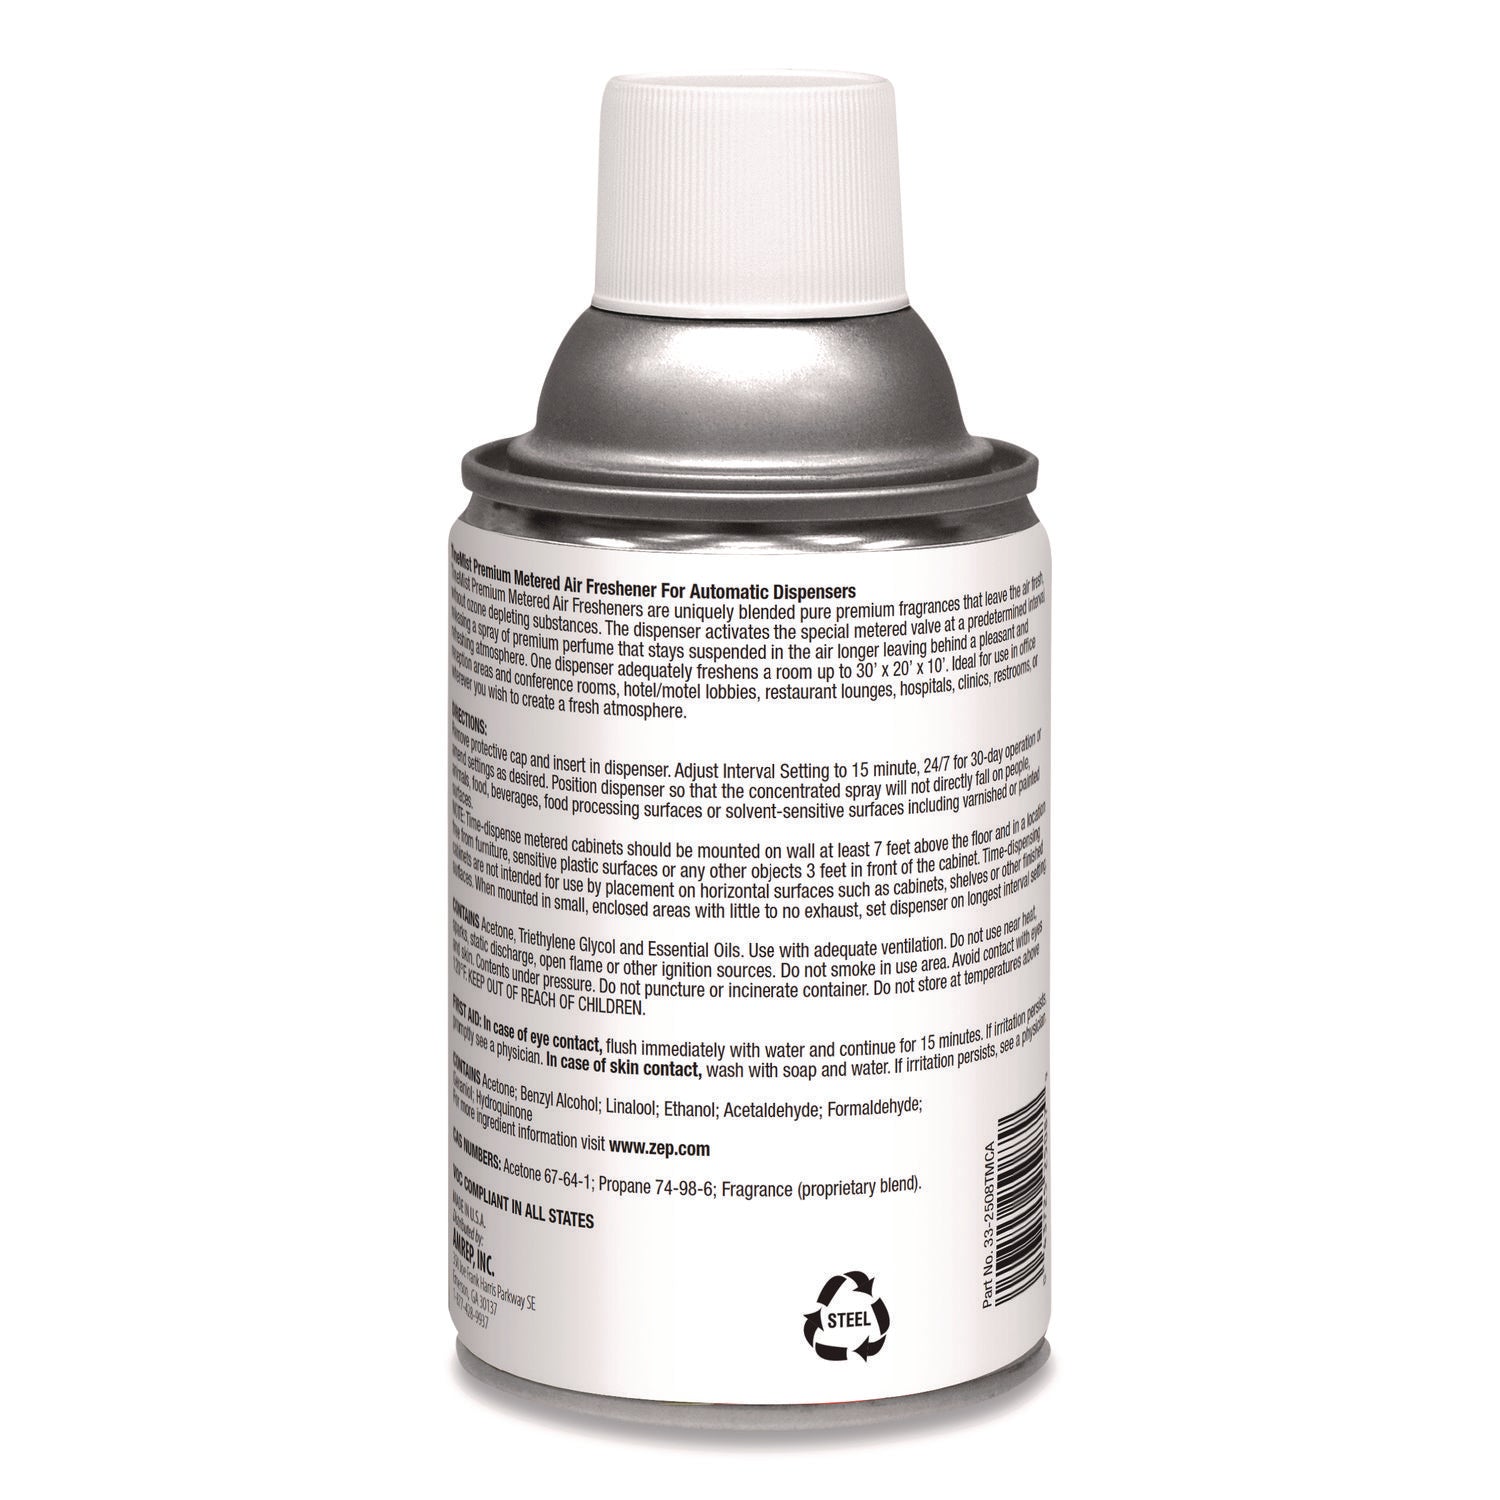 Premium Metered Air Freshener Refill, Citrus, 6.6 oz Aerosol Spray - 2